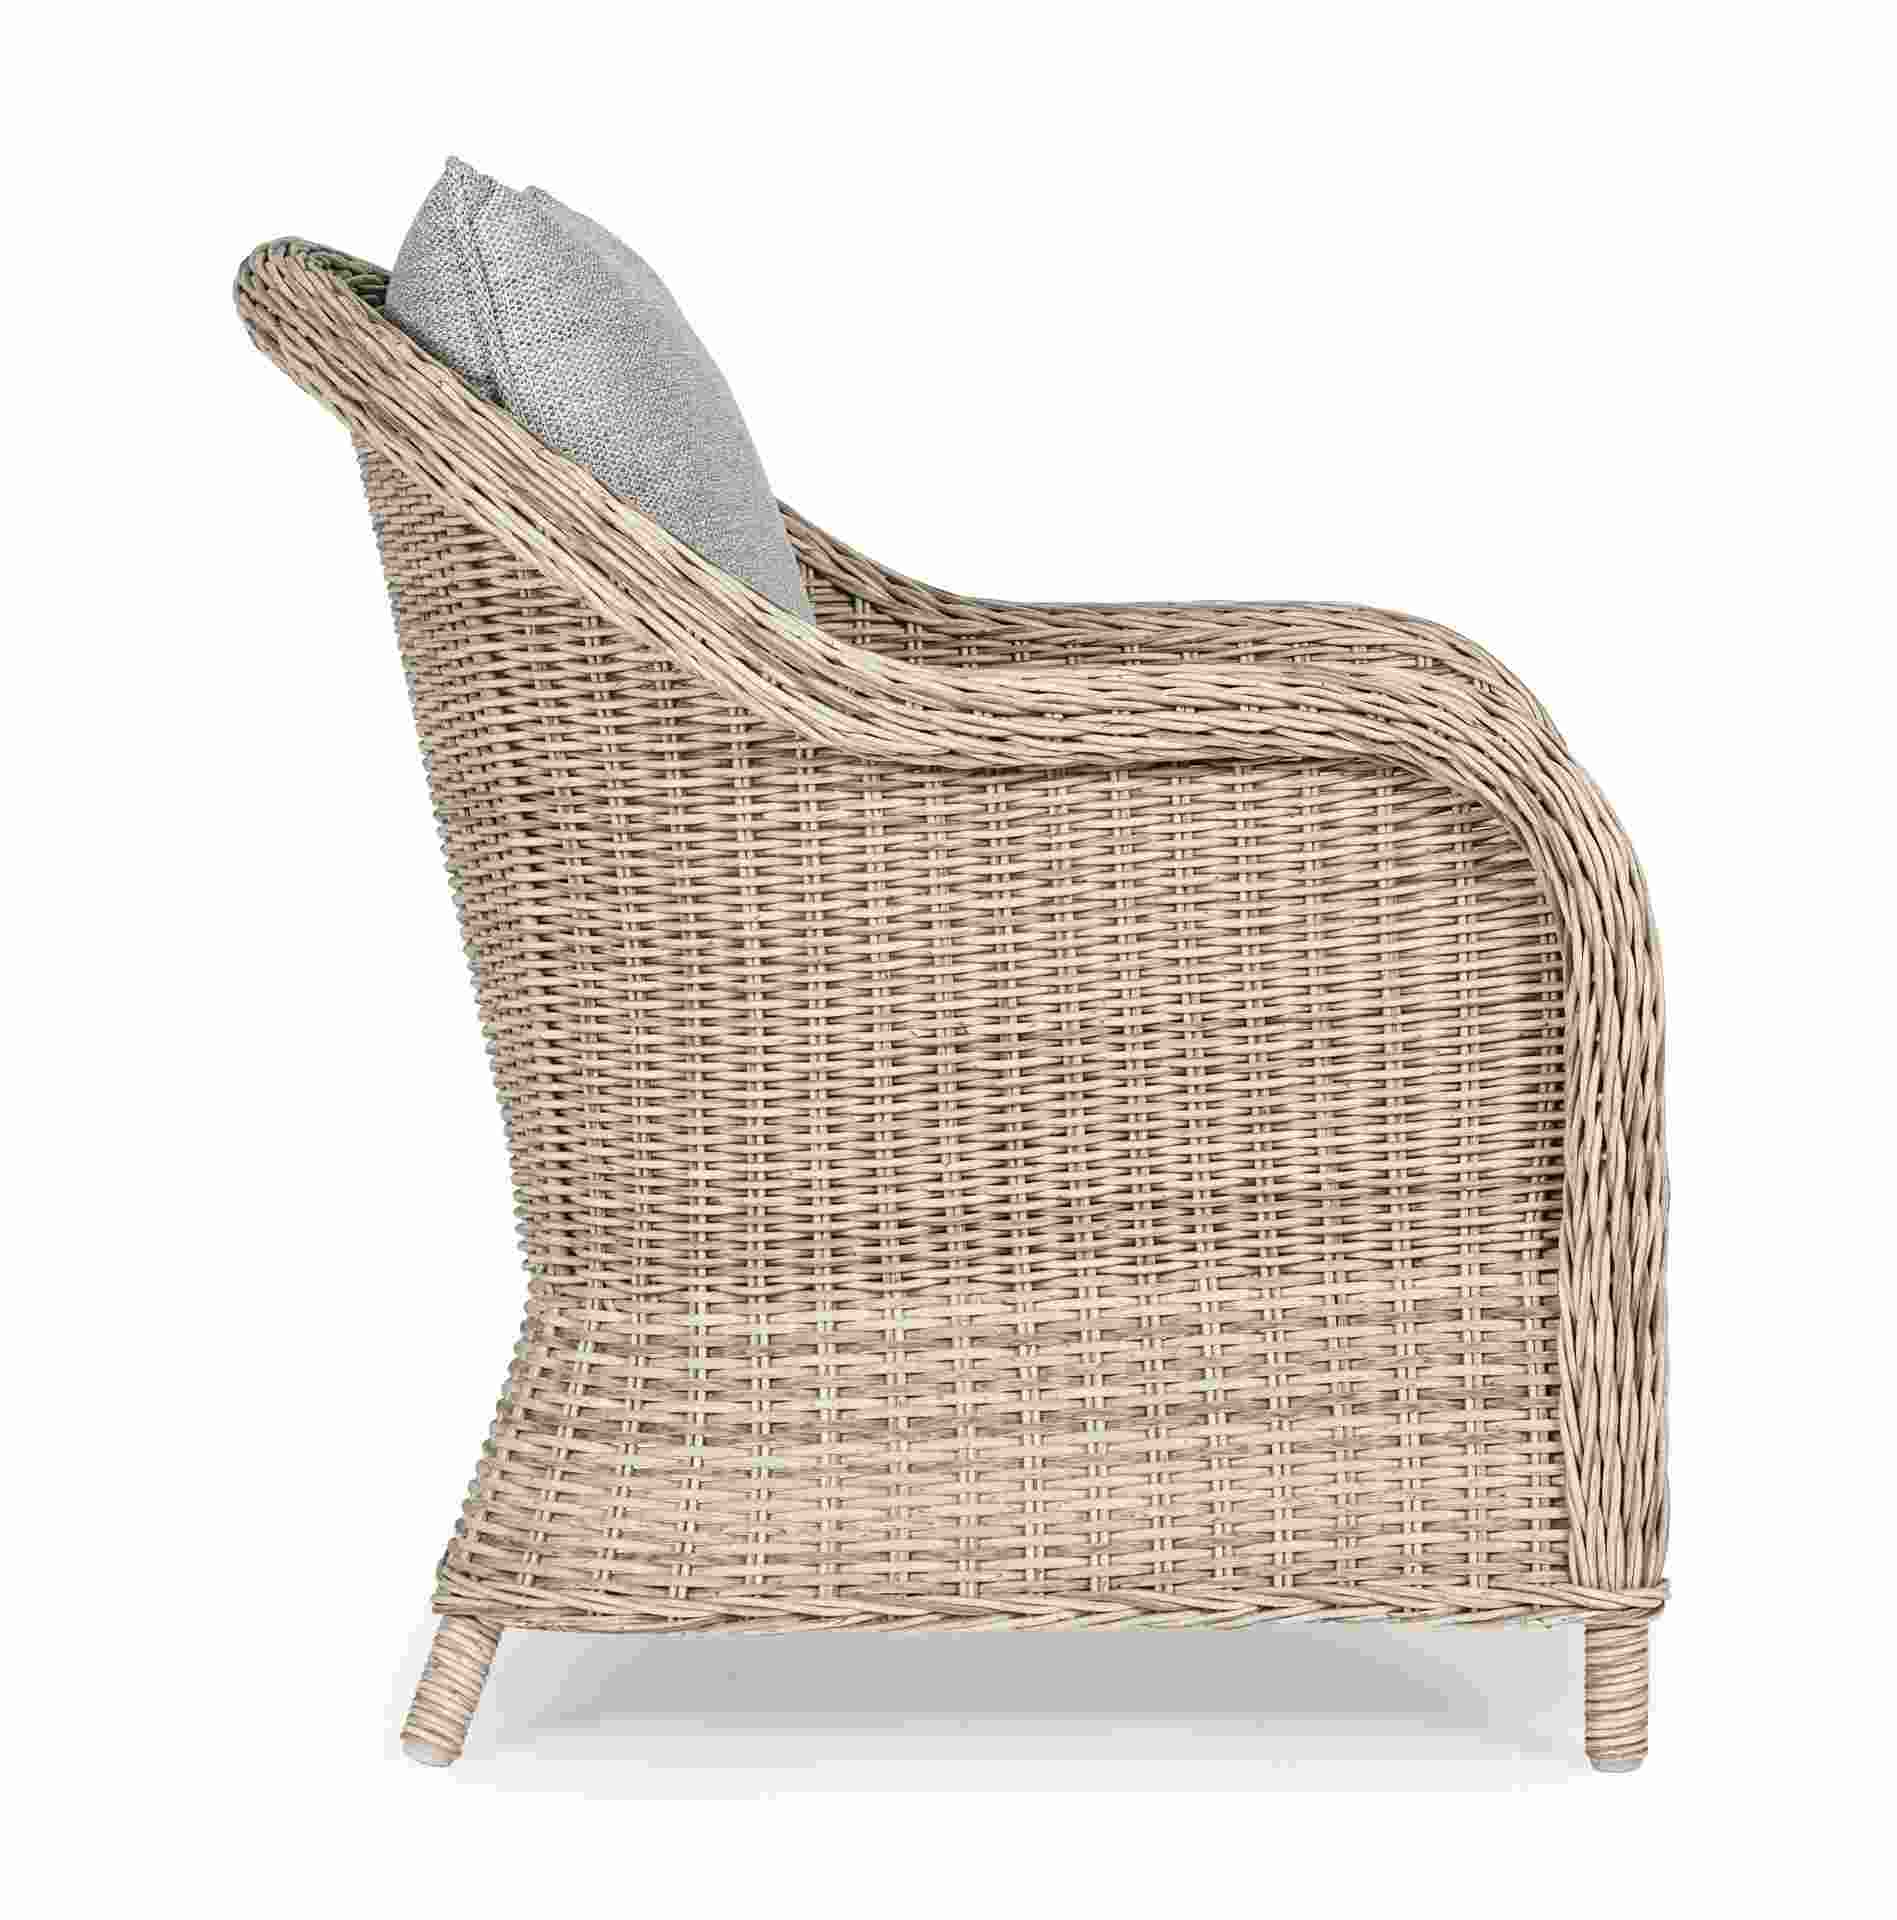 Der Gartensessel Aditya überzeugt mit seinem klassischen Design. Gefertigt wurde es aus Kunstfasern, welche einen Sand Farbton besitzen. Das Gestell ist aus Aluminium und hat eine Anthrazit Farbe. Der Sessel verfügt über eine Sitzhöhe von 42 cm und ist fü